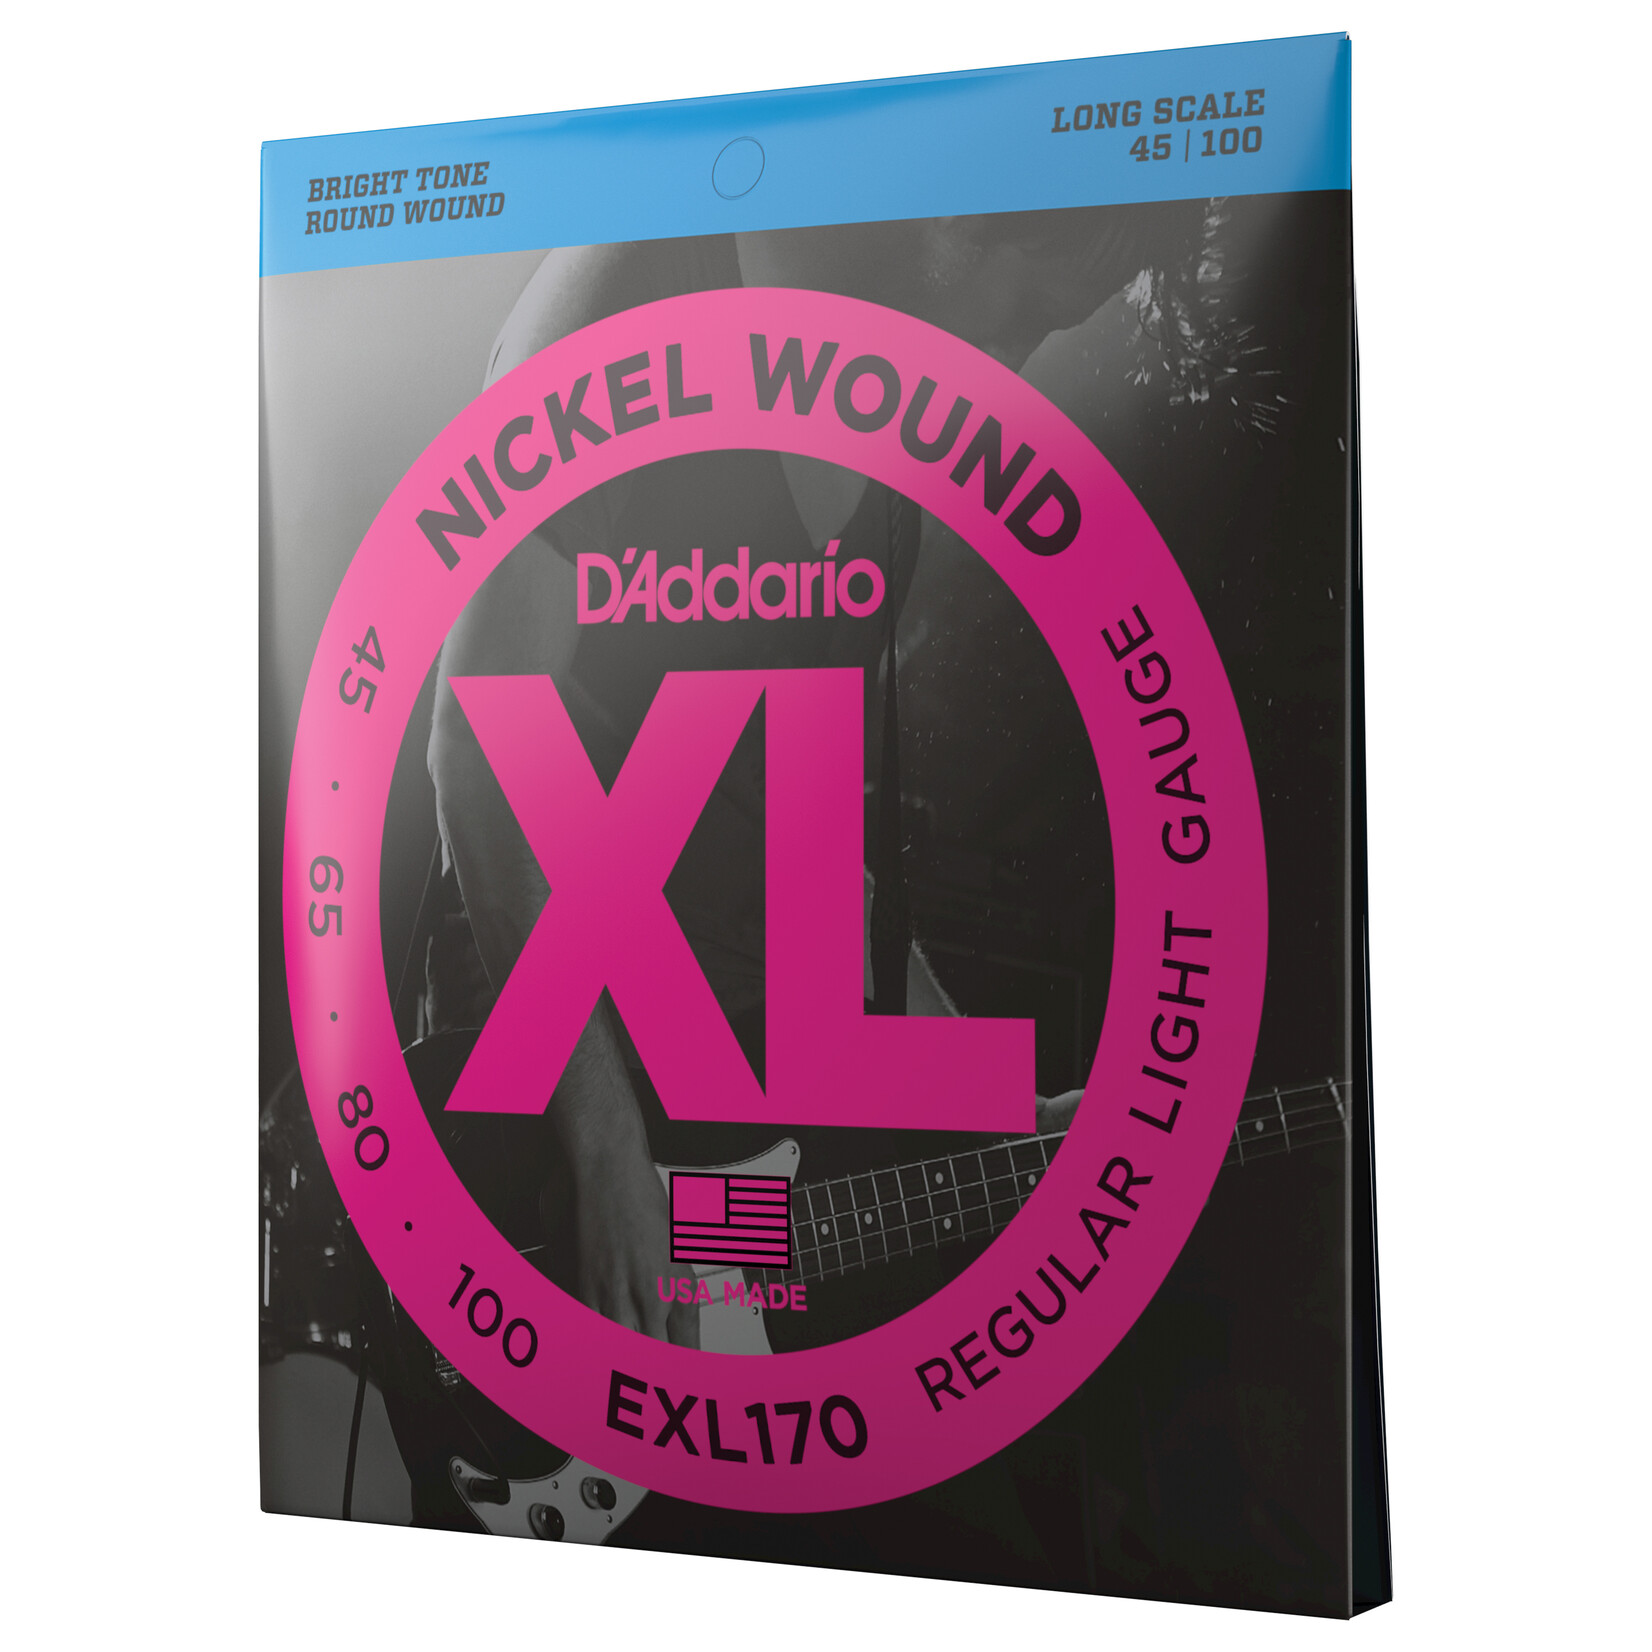 D’Addario D'addario Bass EXL170, 45-100 Long Scale 4 string